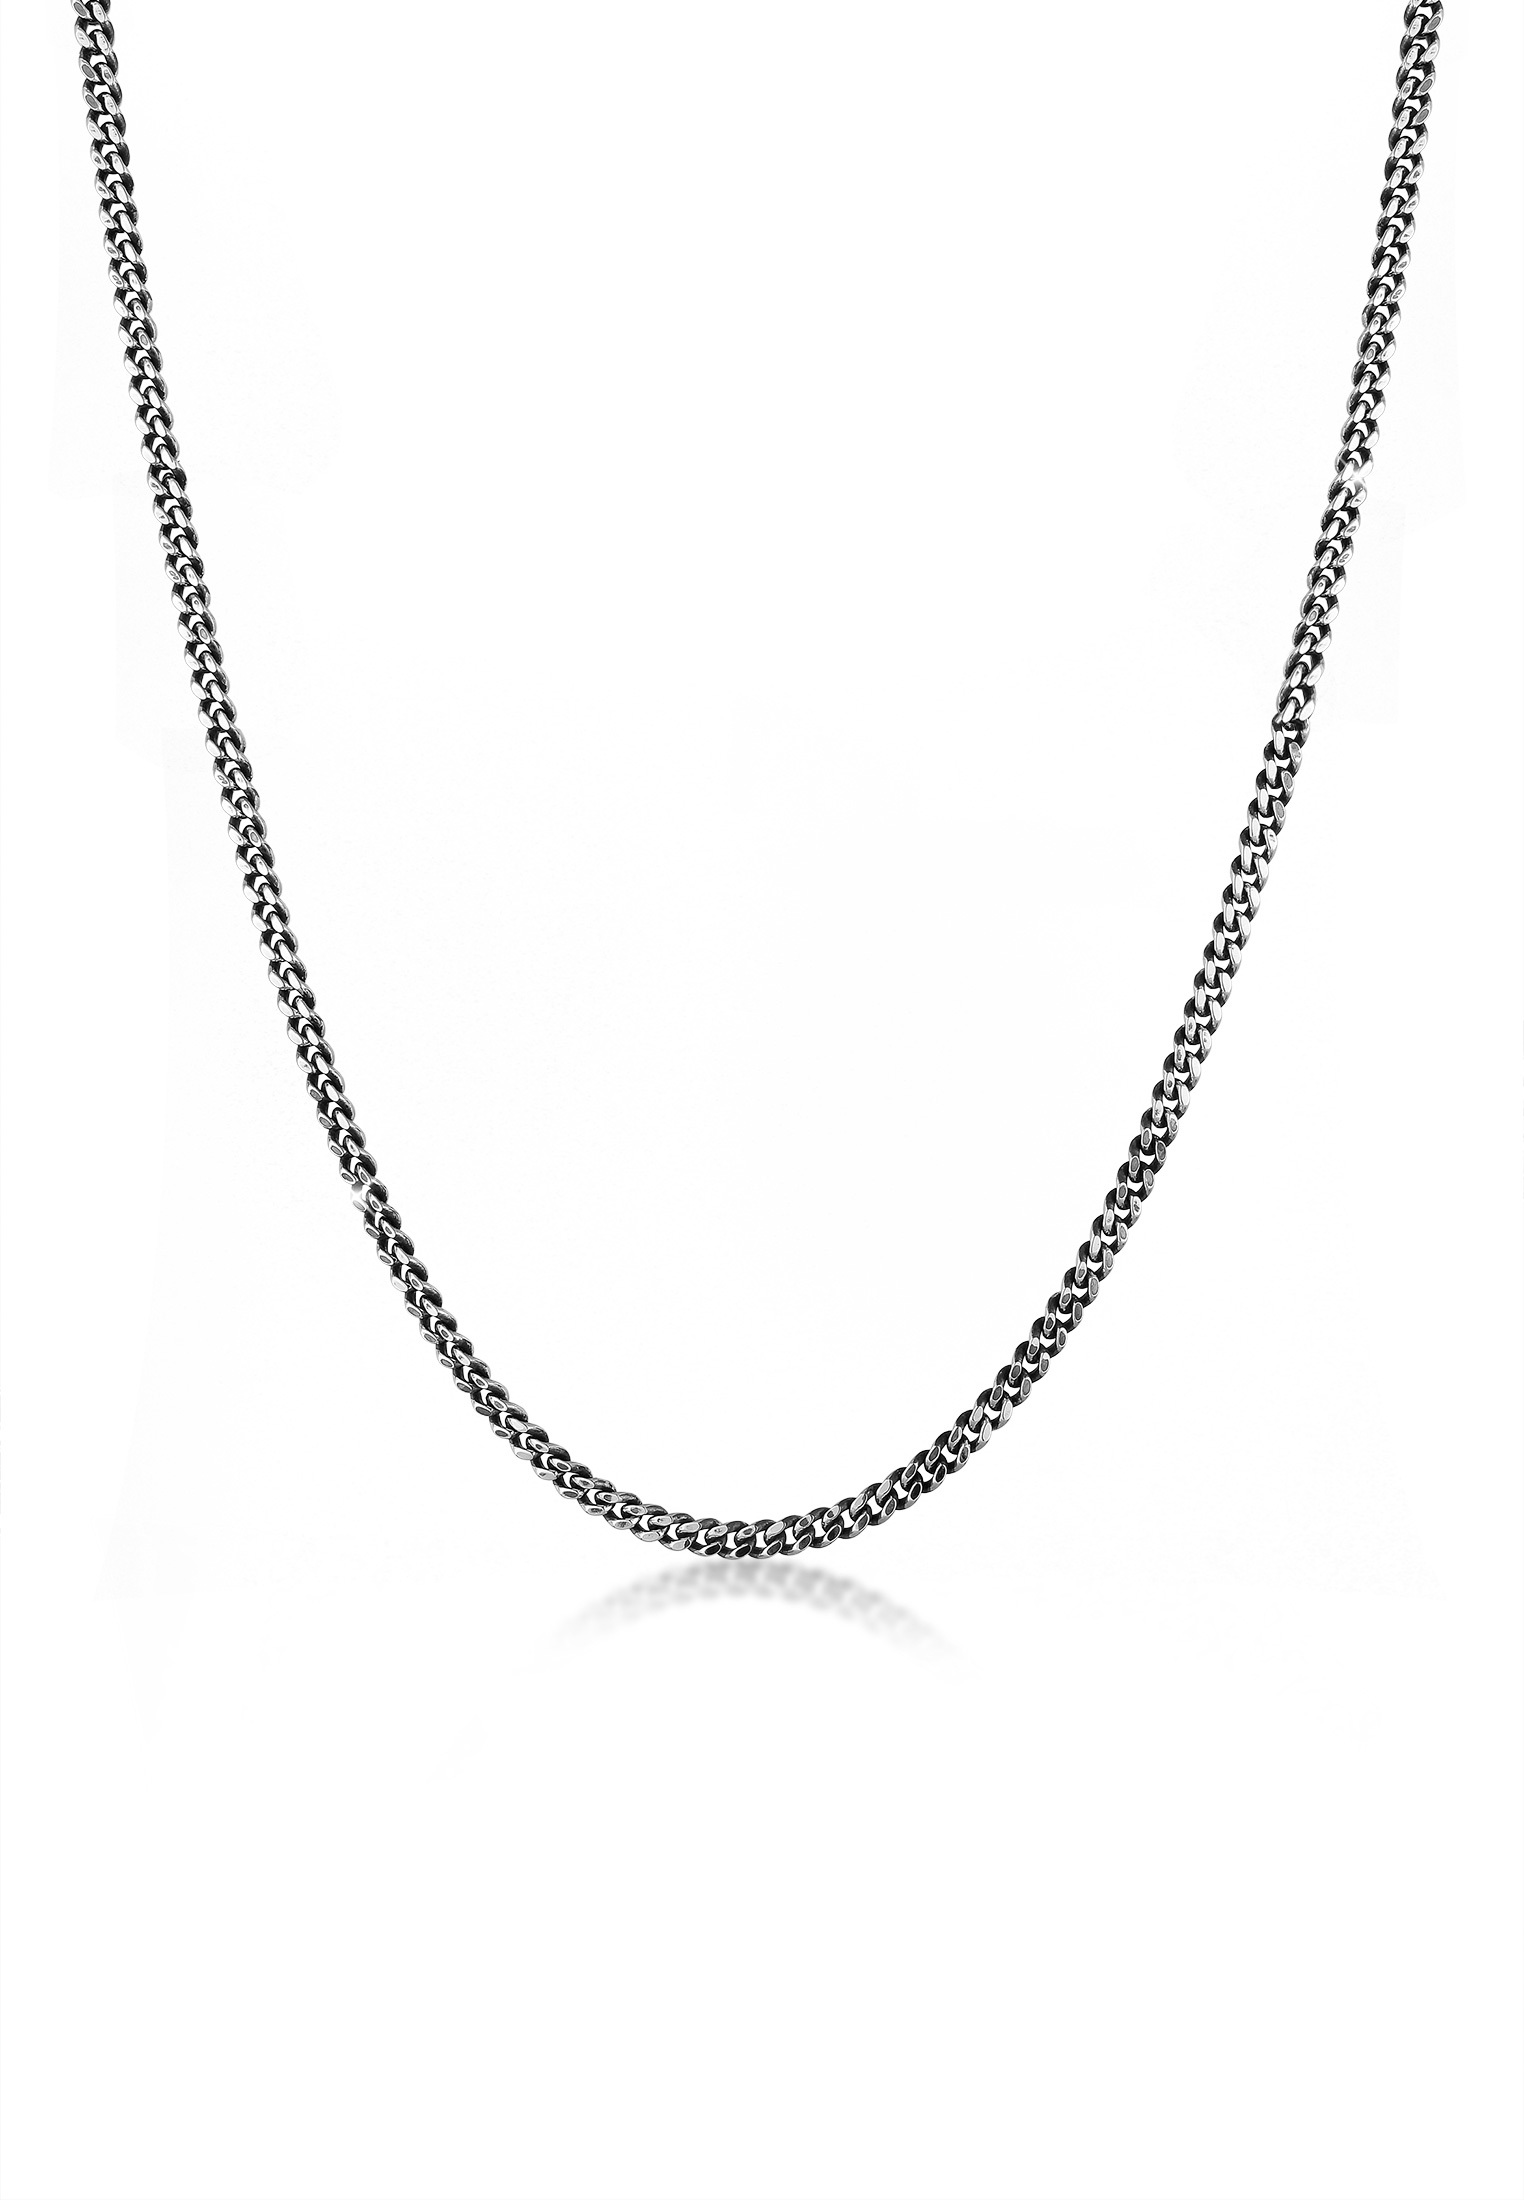 Silberkette Erbskette 925 er Silber massiv Sterlingsilber hochwertige Halskette!